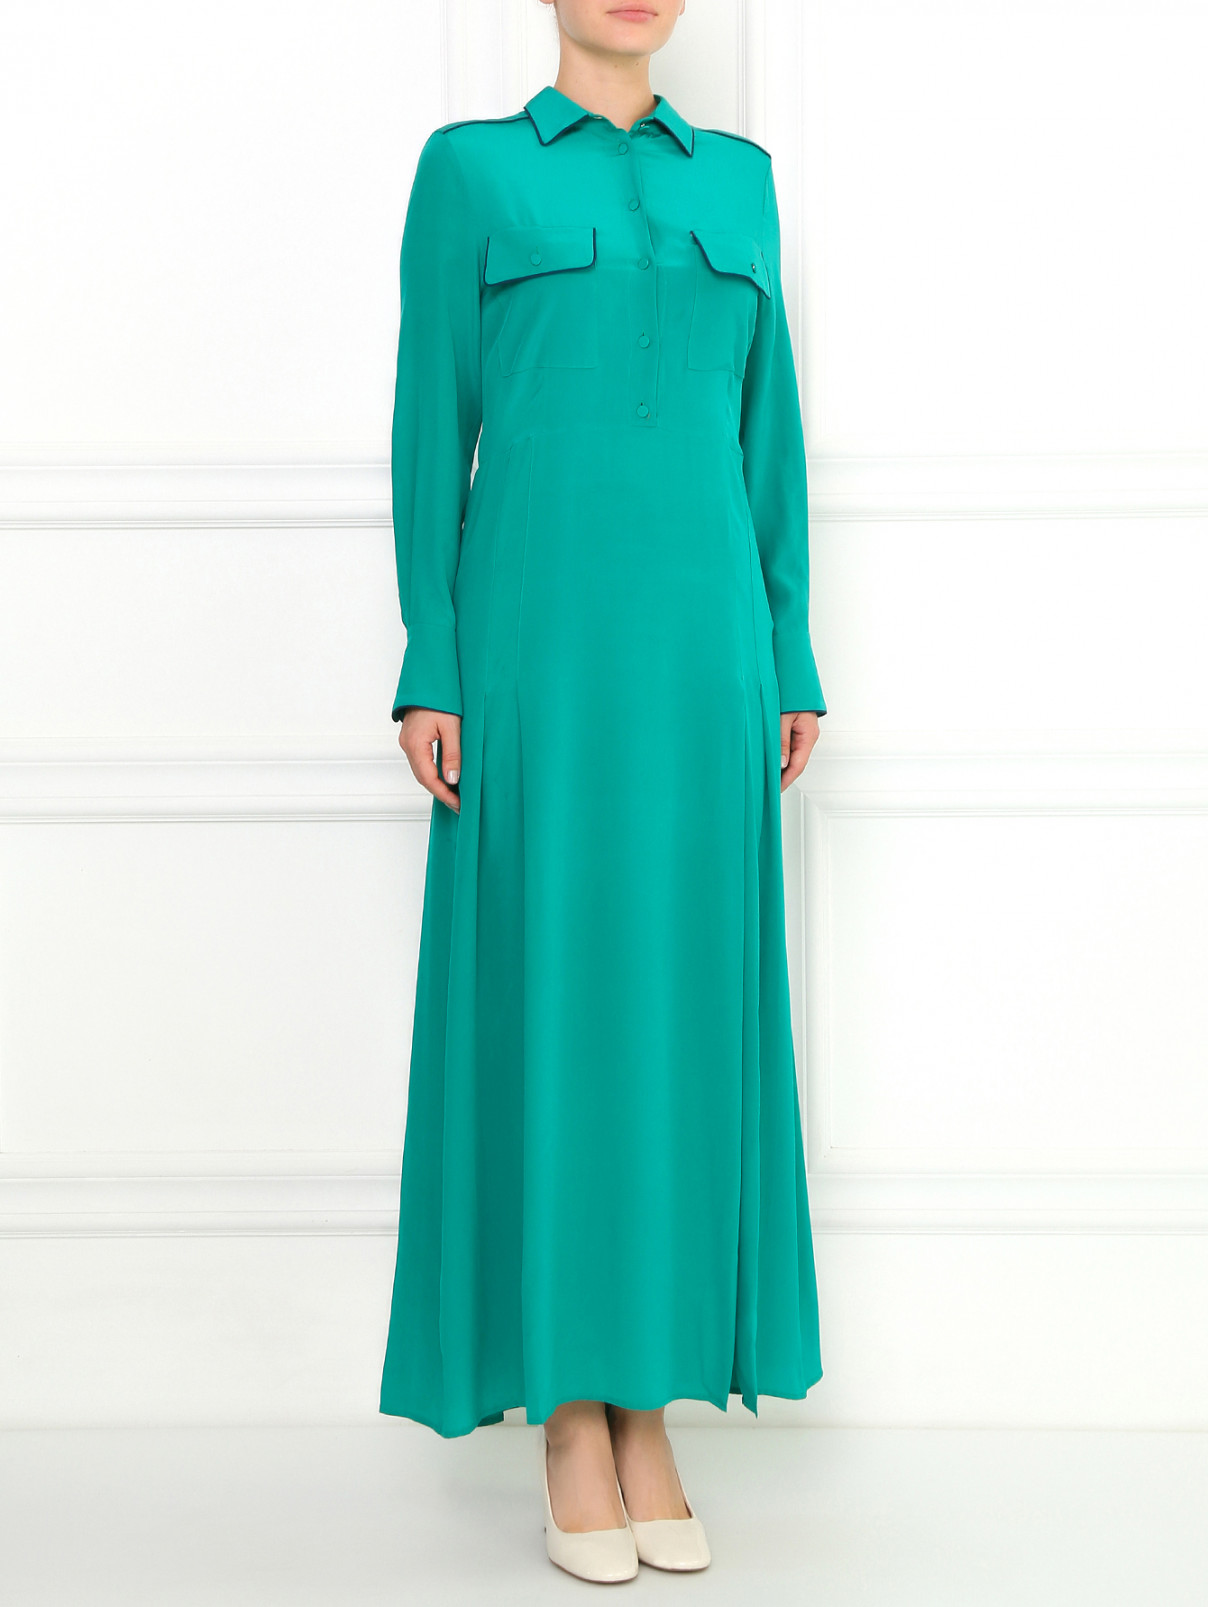 Шелковое макси платье-рубашка с разрезом Aquilano Rimondi  –  Модель Общий вид  – Цвет:  Зеленый